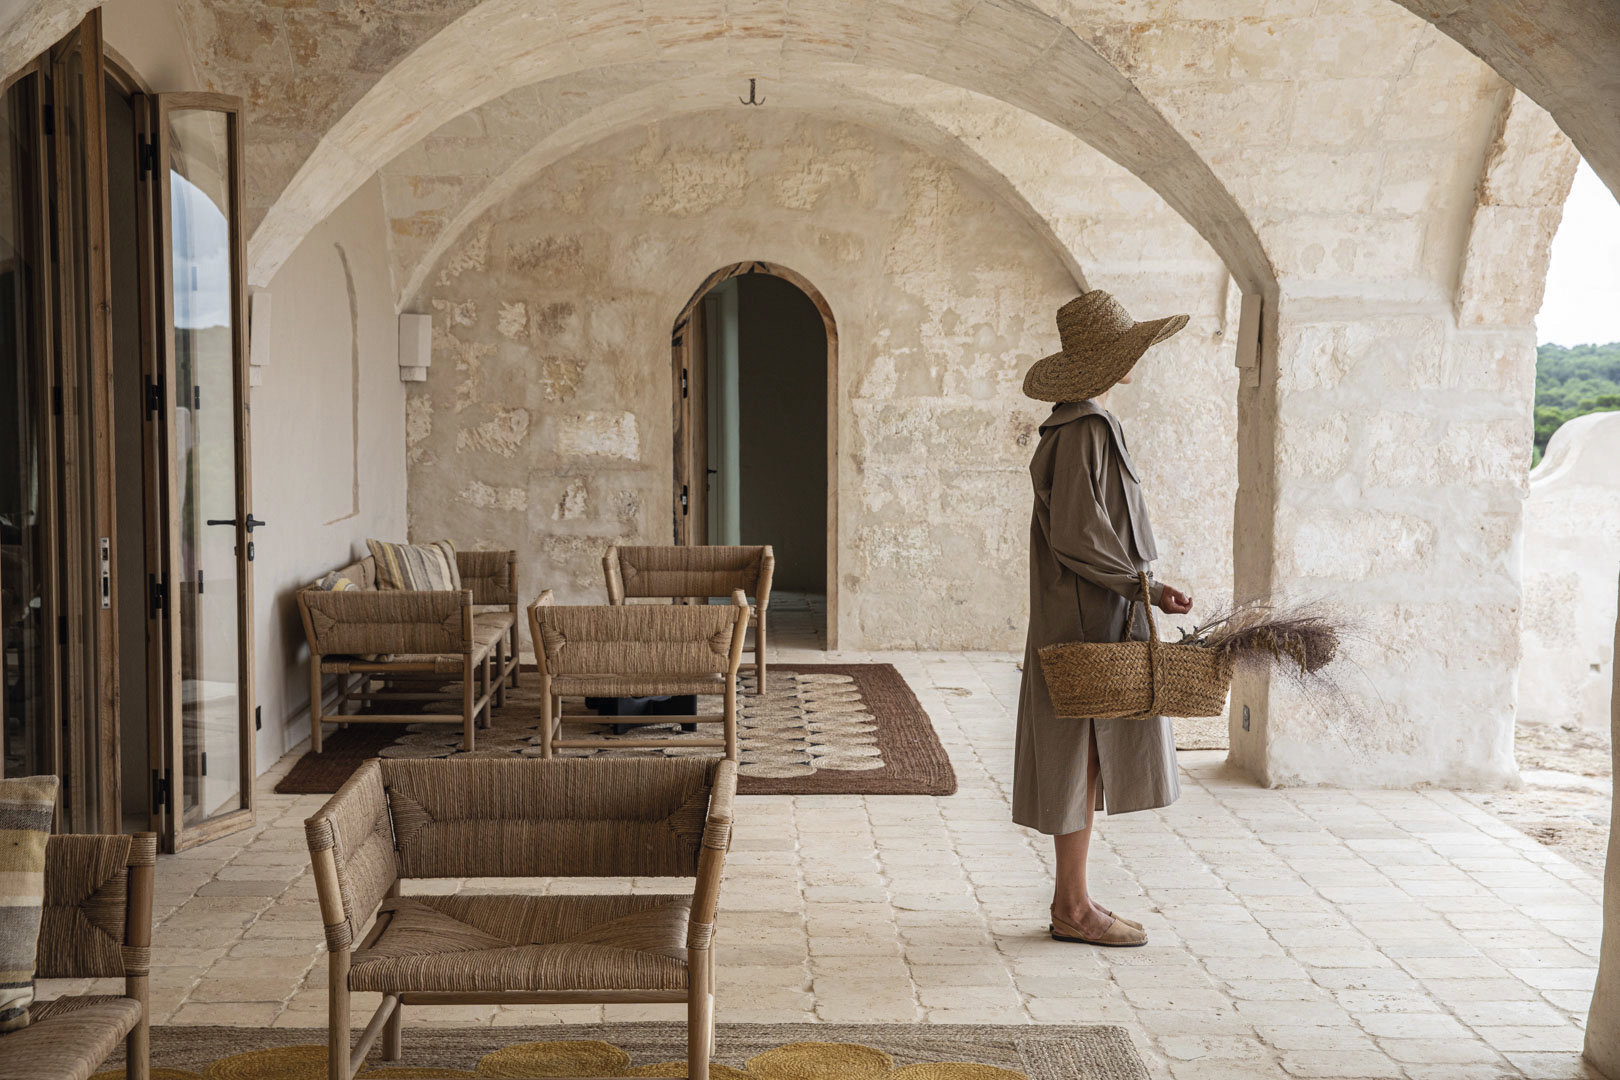 Debajo, el porche bajo las arcadas de piedra que se han conservado intactas. Muebles de madera, de Éditions Midi, y alfombras de yute natural, de Élitis